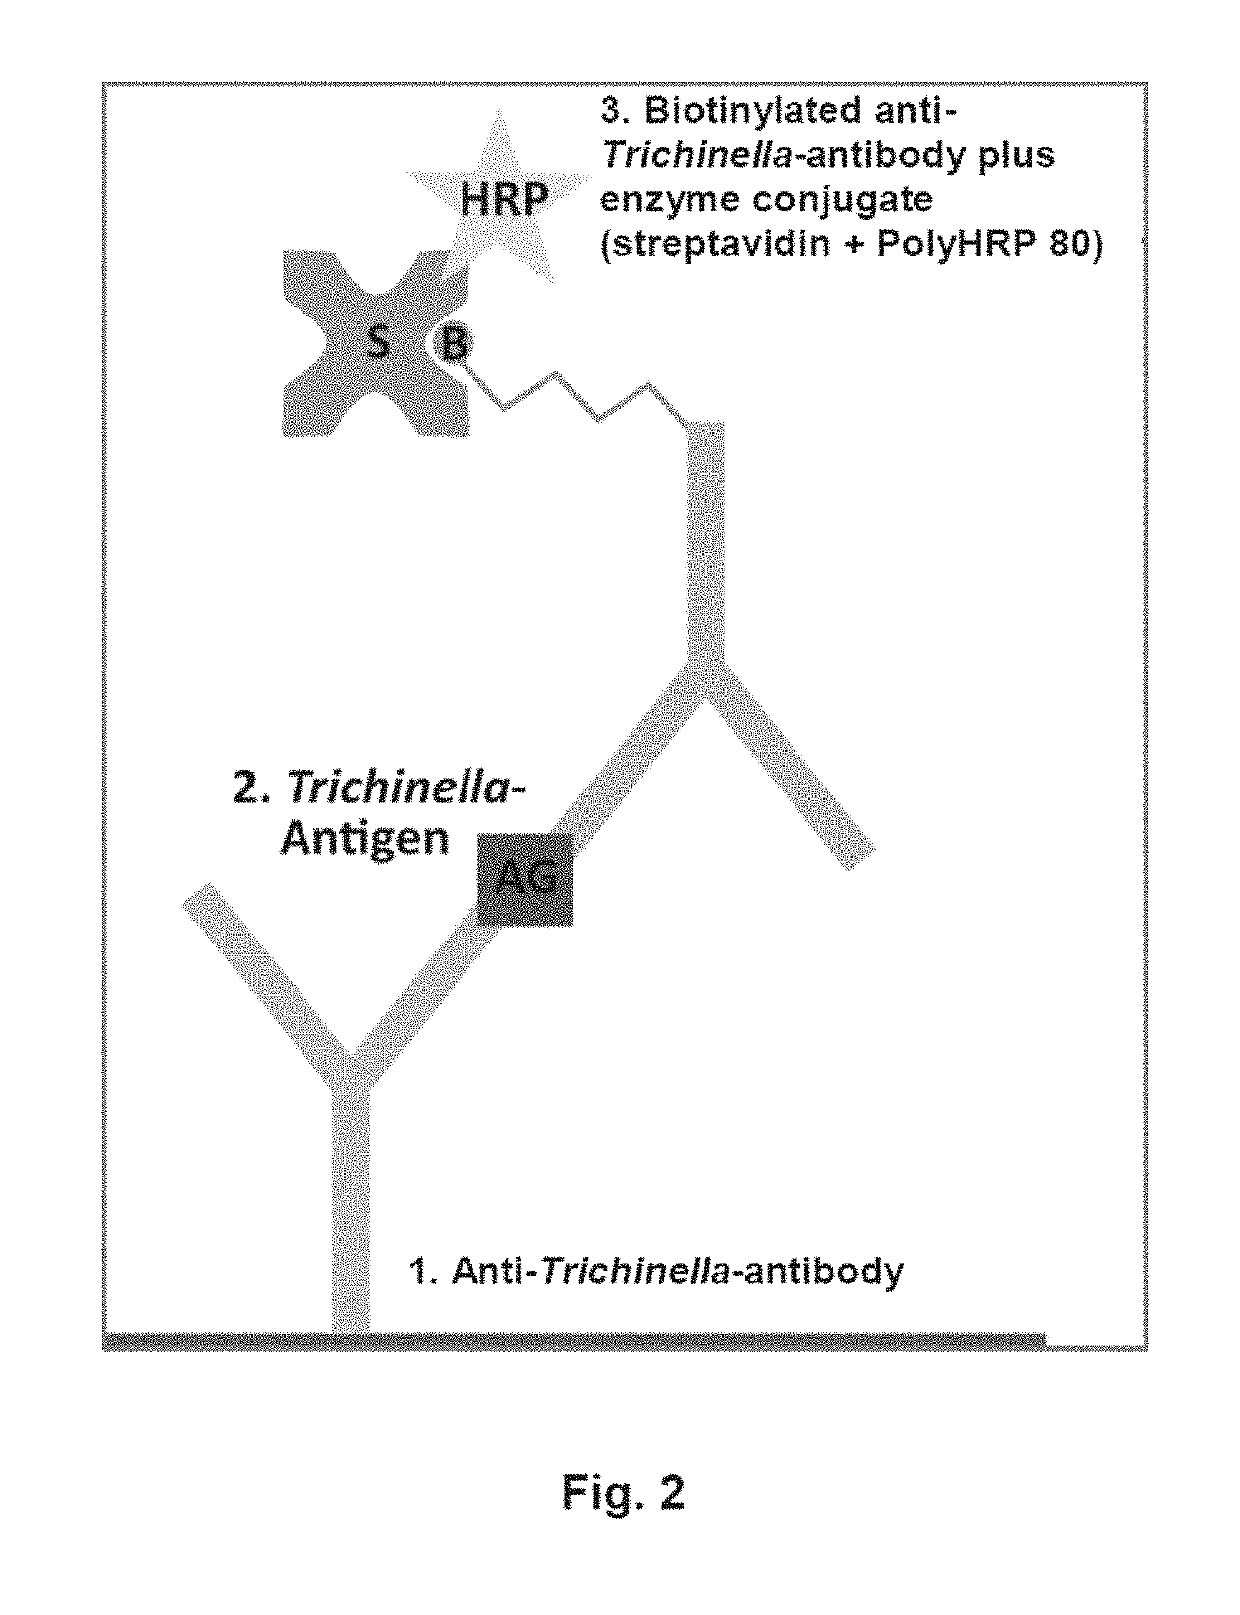 Antigen detection of Trichinella